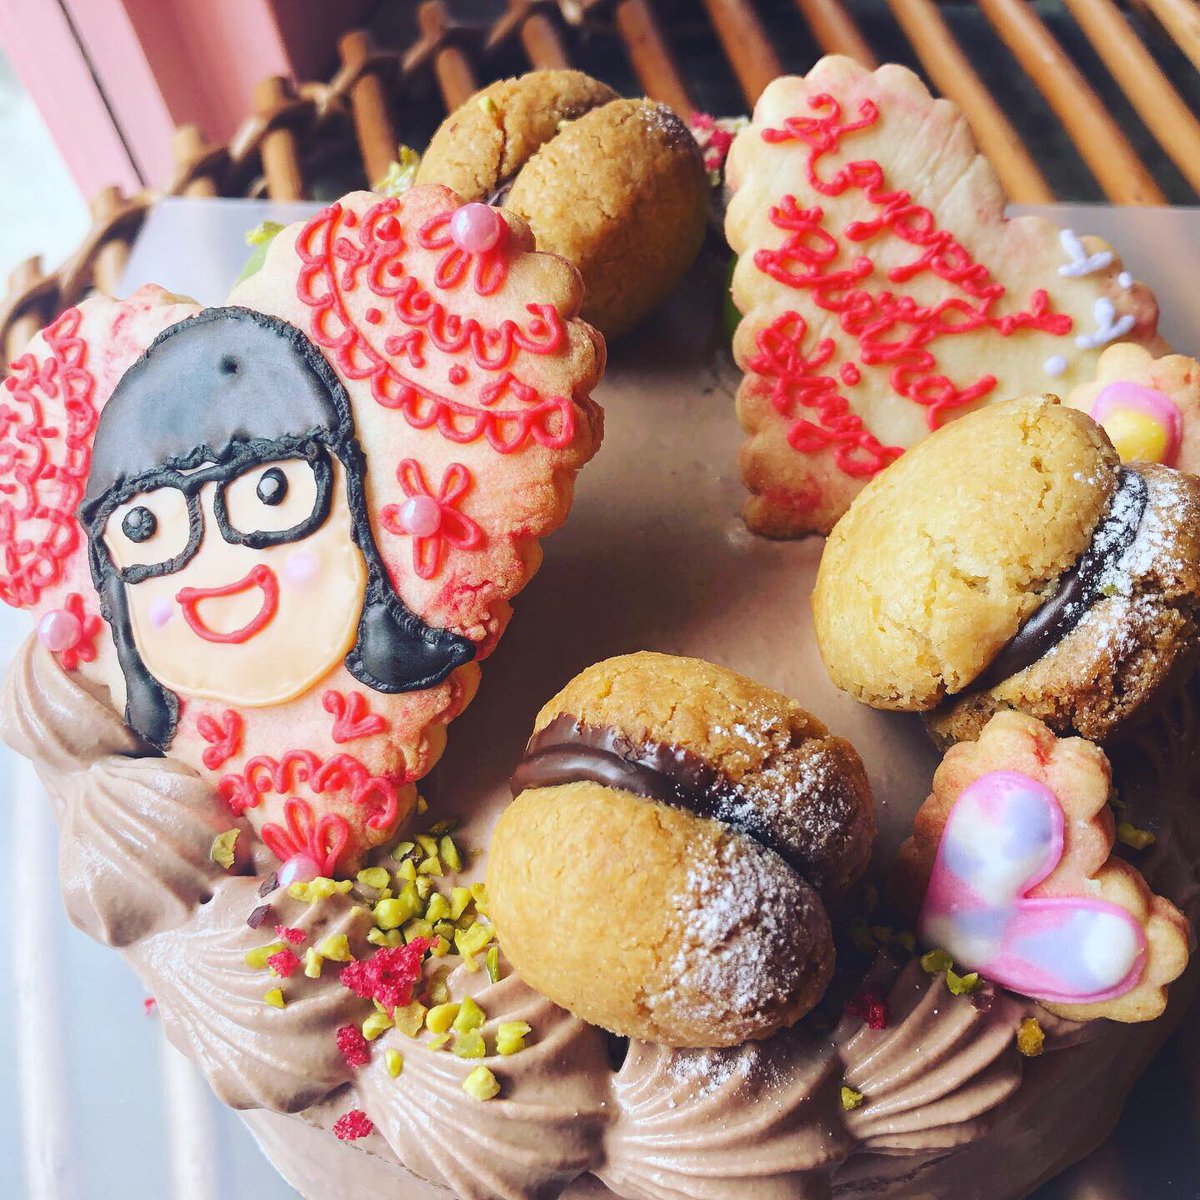 Ryoko On Twitter オーダーメイド 誕生日ケーキをシャインマスカットのイタリアンショコラショートケーキでお作りさせて頂きました パティスリー カフェ ルサブロンバイリョウコ 似顔絵 アイシングクッキー 誕生日ケーキ バースデーケーキ イタリアン